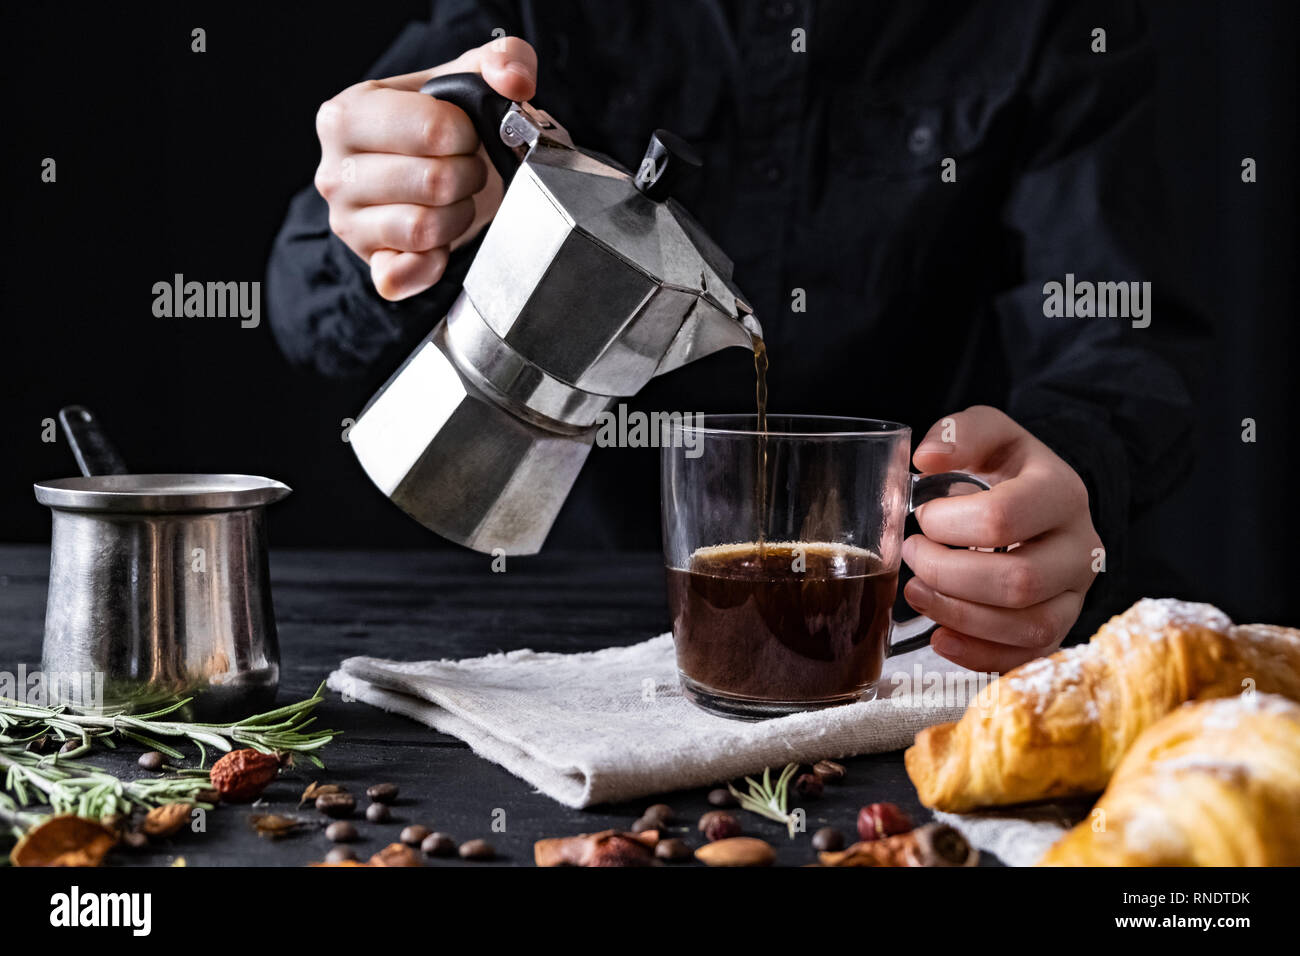 Verter el café de una cafetera eléctrica italiana, rodada en low